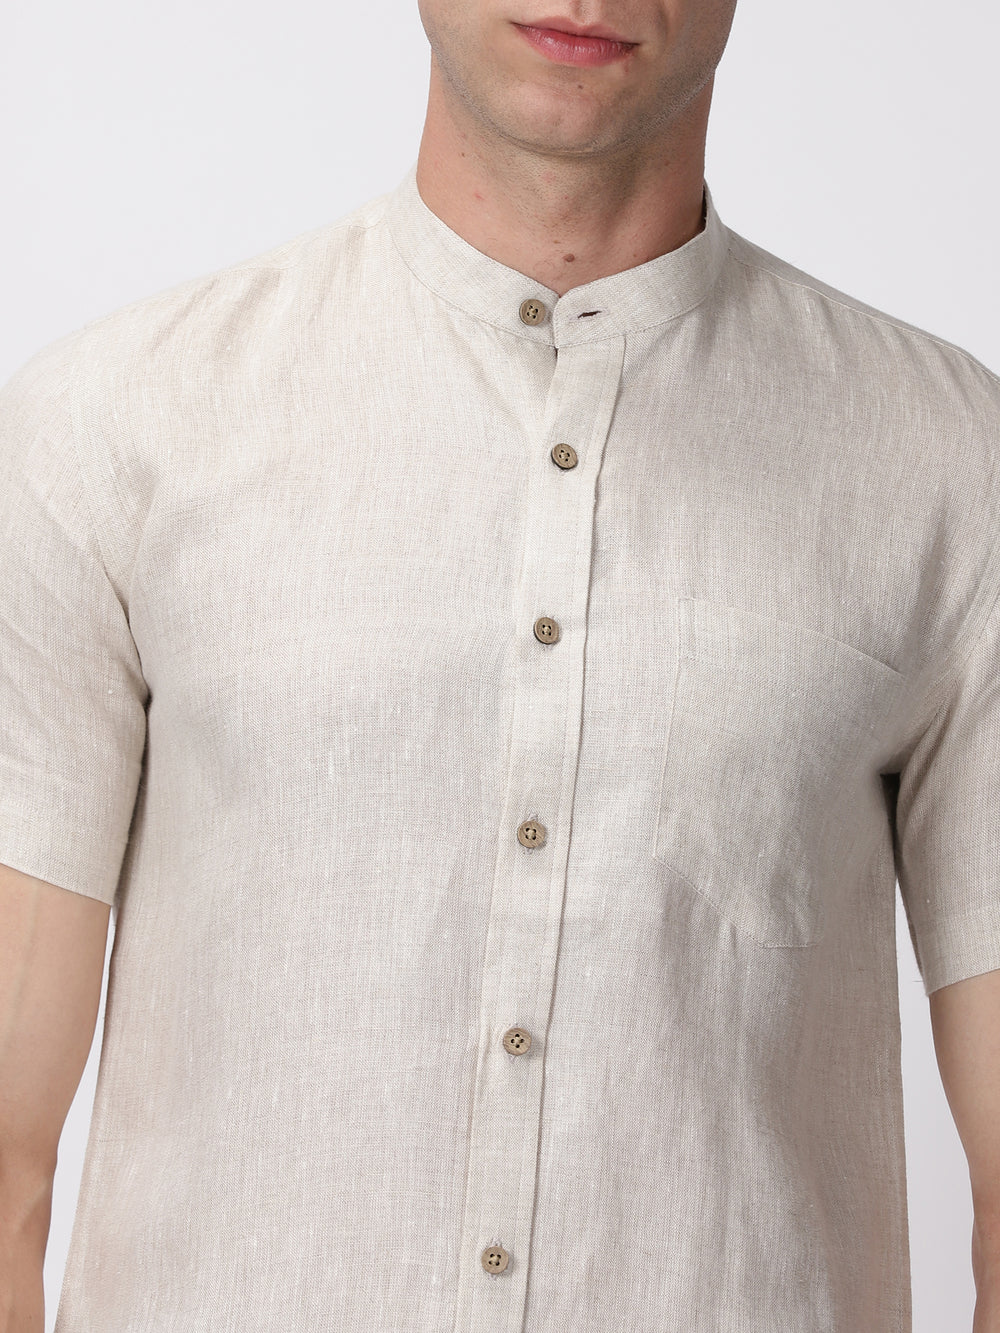 Chang - Pure Linen Mandarin Collar Half Sleeve Shirt - Ecru